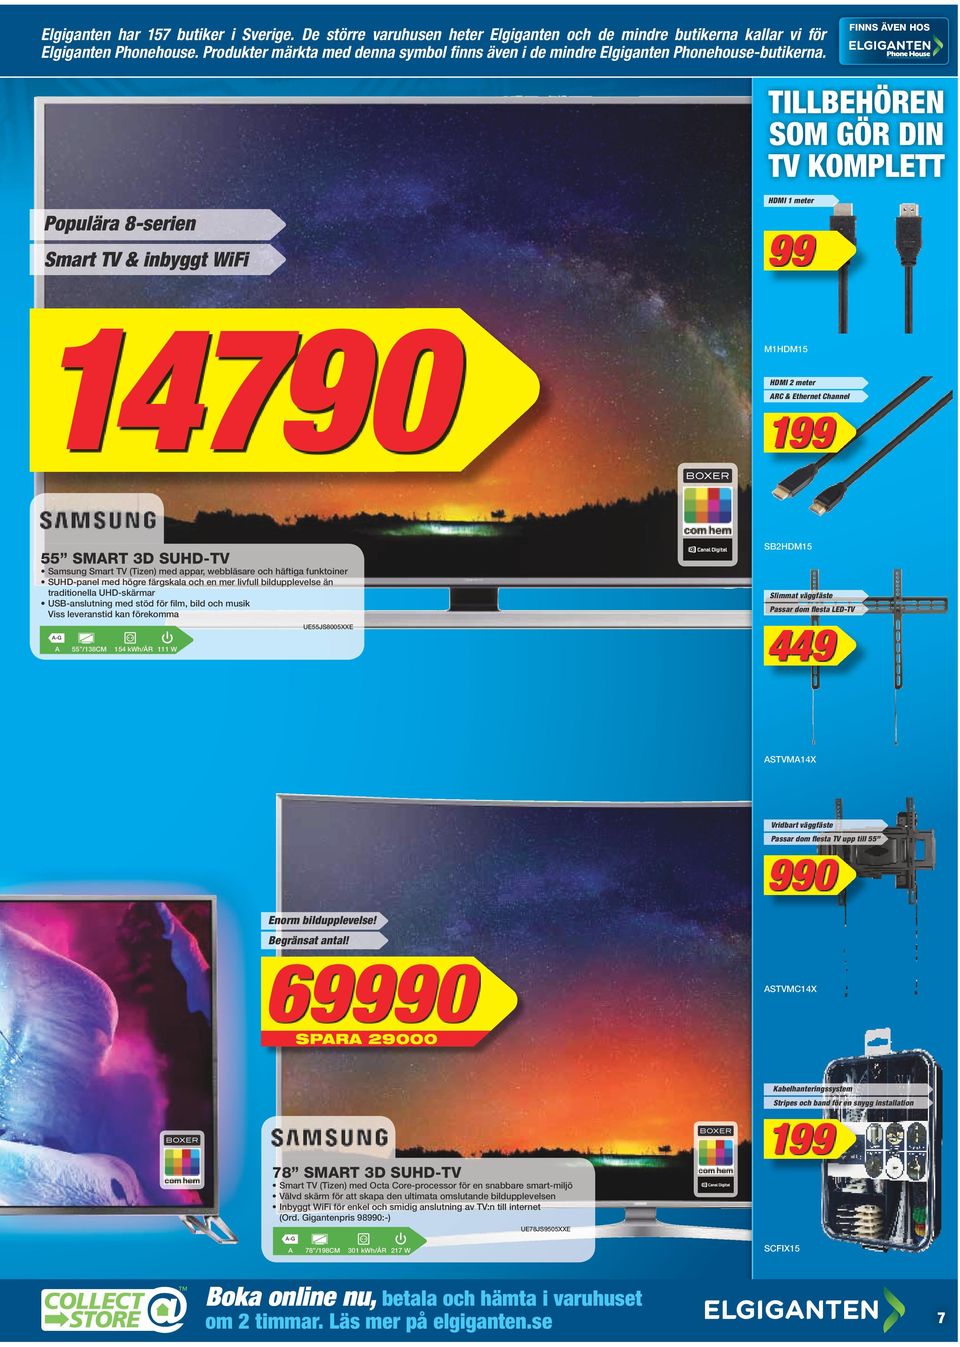 TILLBEHÖREN SOM GÖR DIN TV KOMPLETT HDMI 1 meter Populära 8-serien 99 Smart TV & inbyggt WiFi 14790 Samsung Smart TV (Tizen) med appar, webbläsare och häftiga funktoiner SUHD-panel med högre